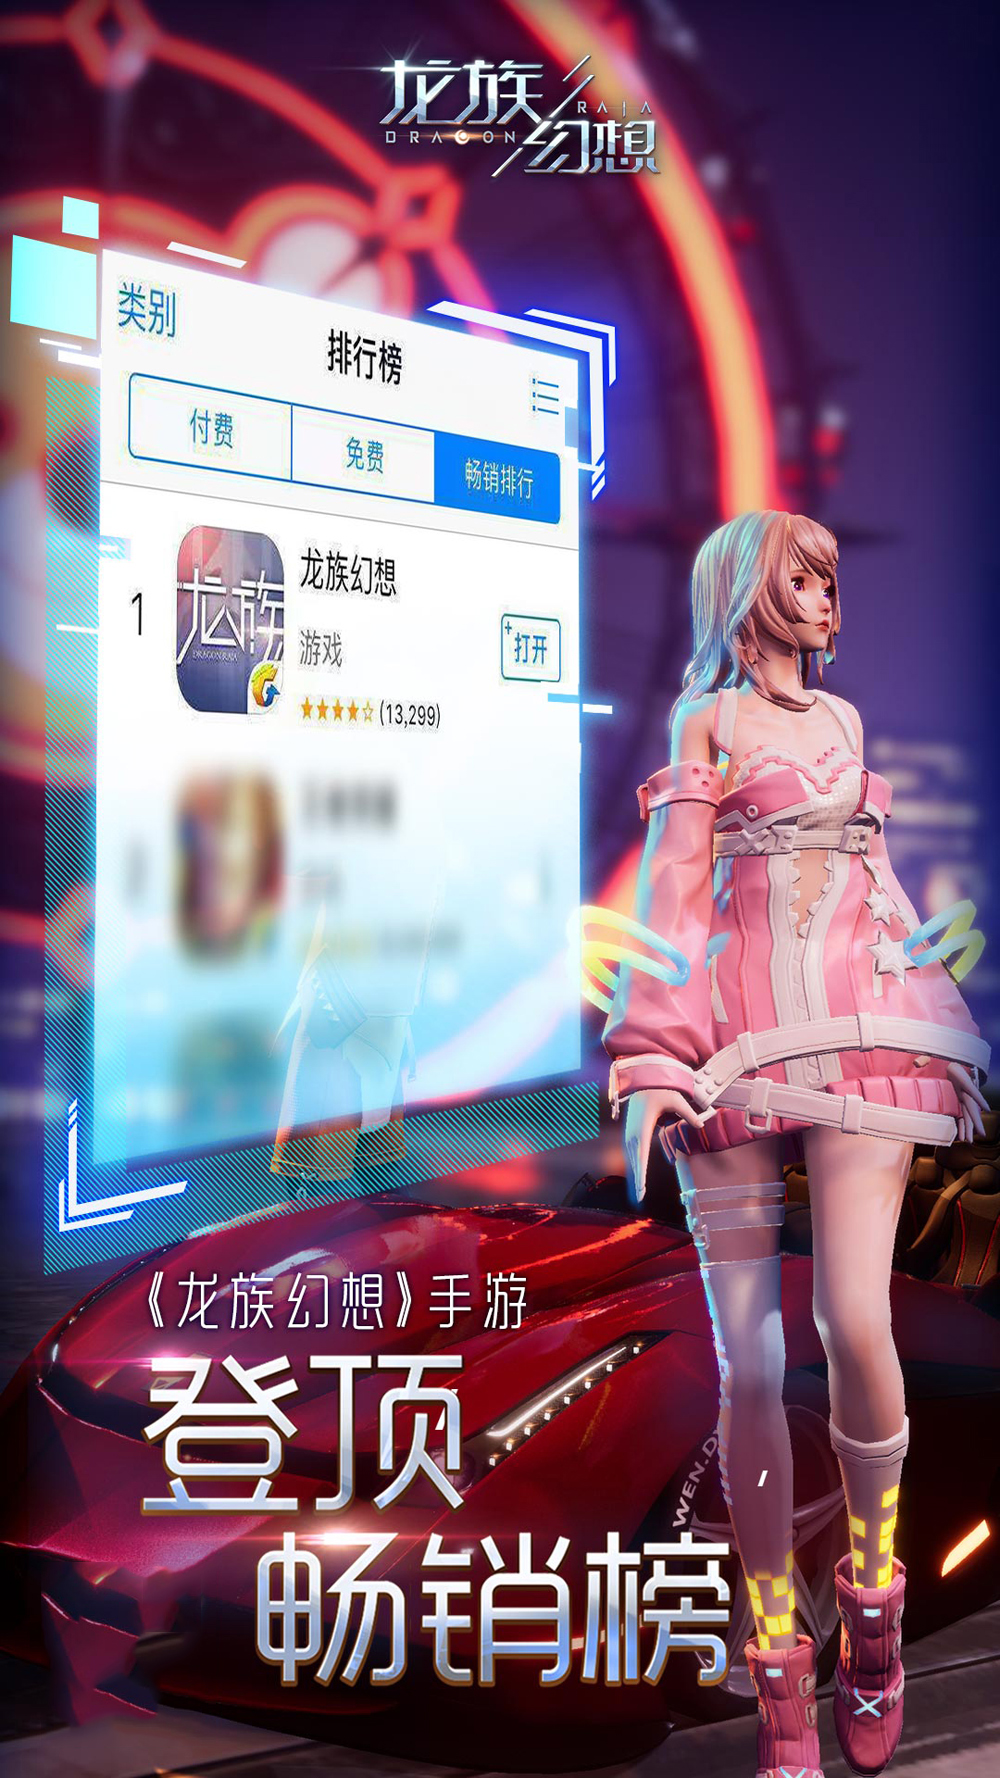 《龙族幻想》登顶iOS双榜 日韩画手力荐游戏高品质美术表现